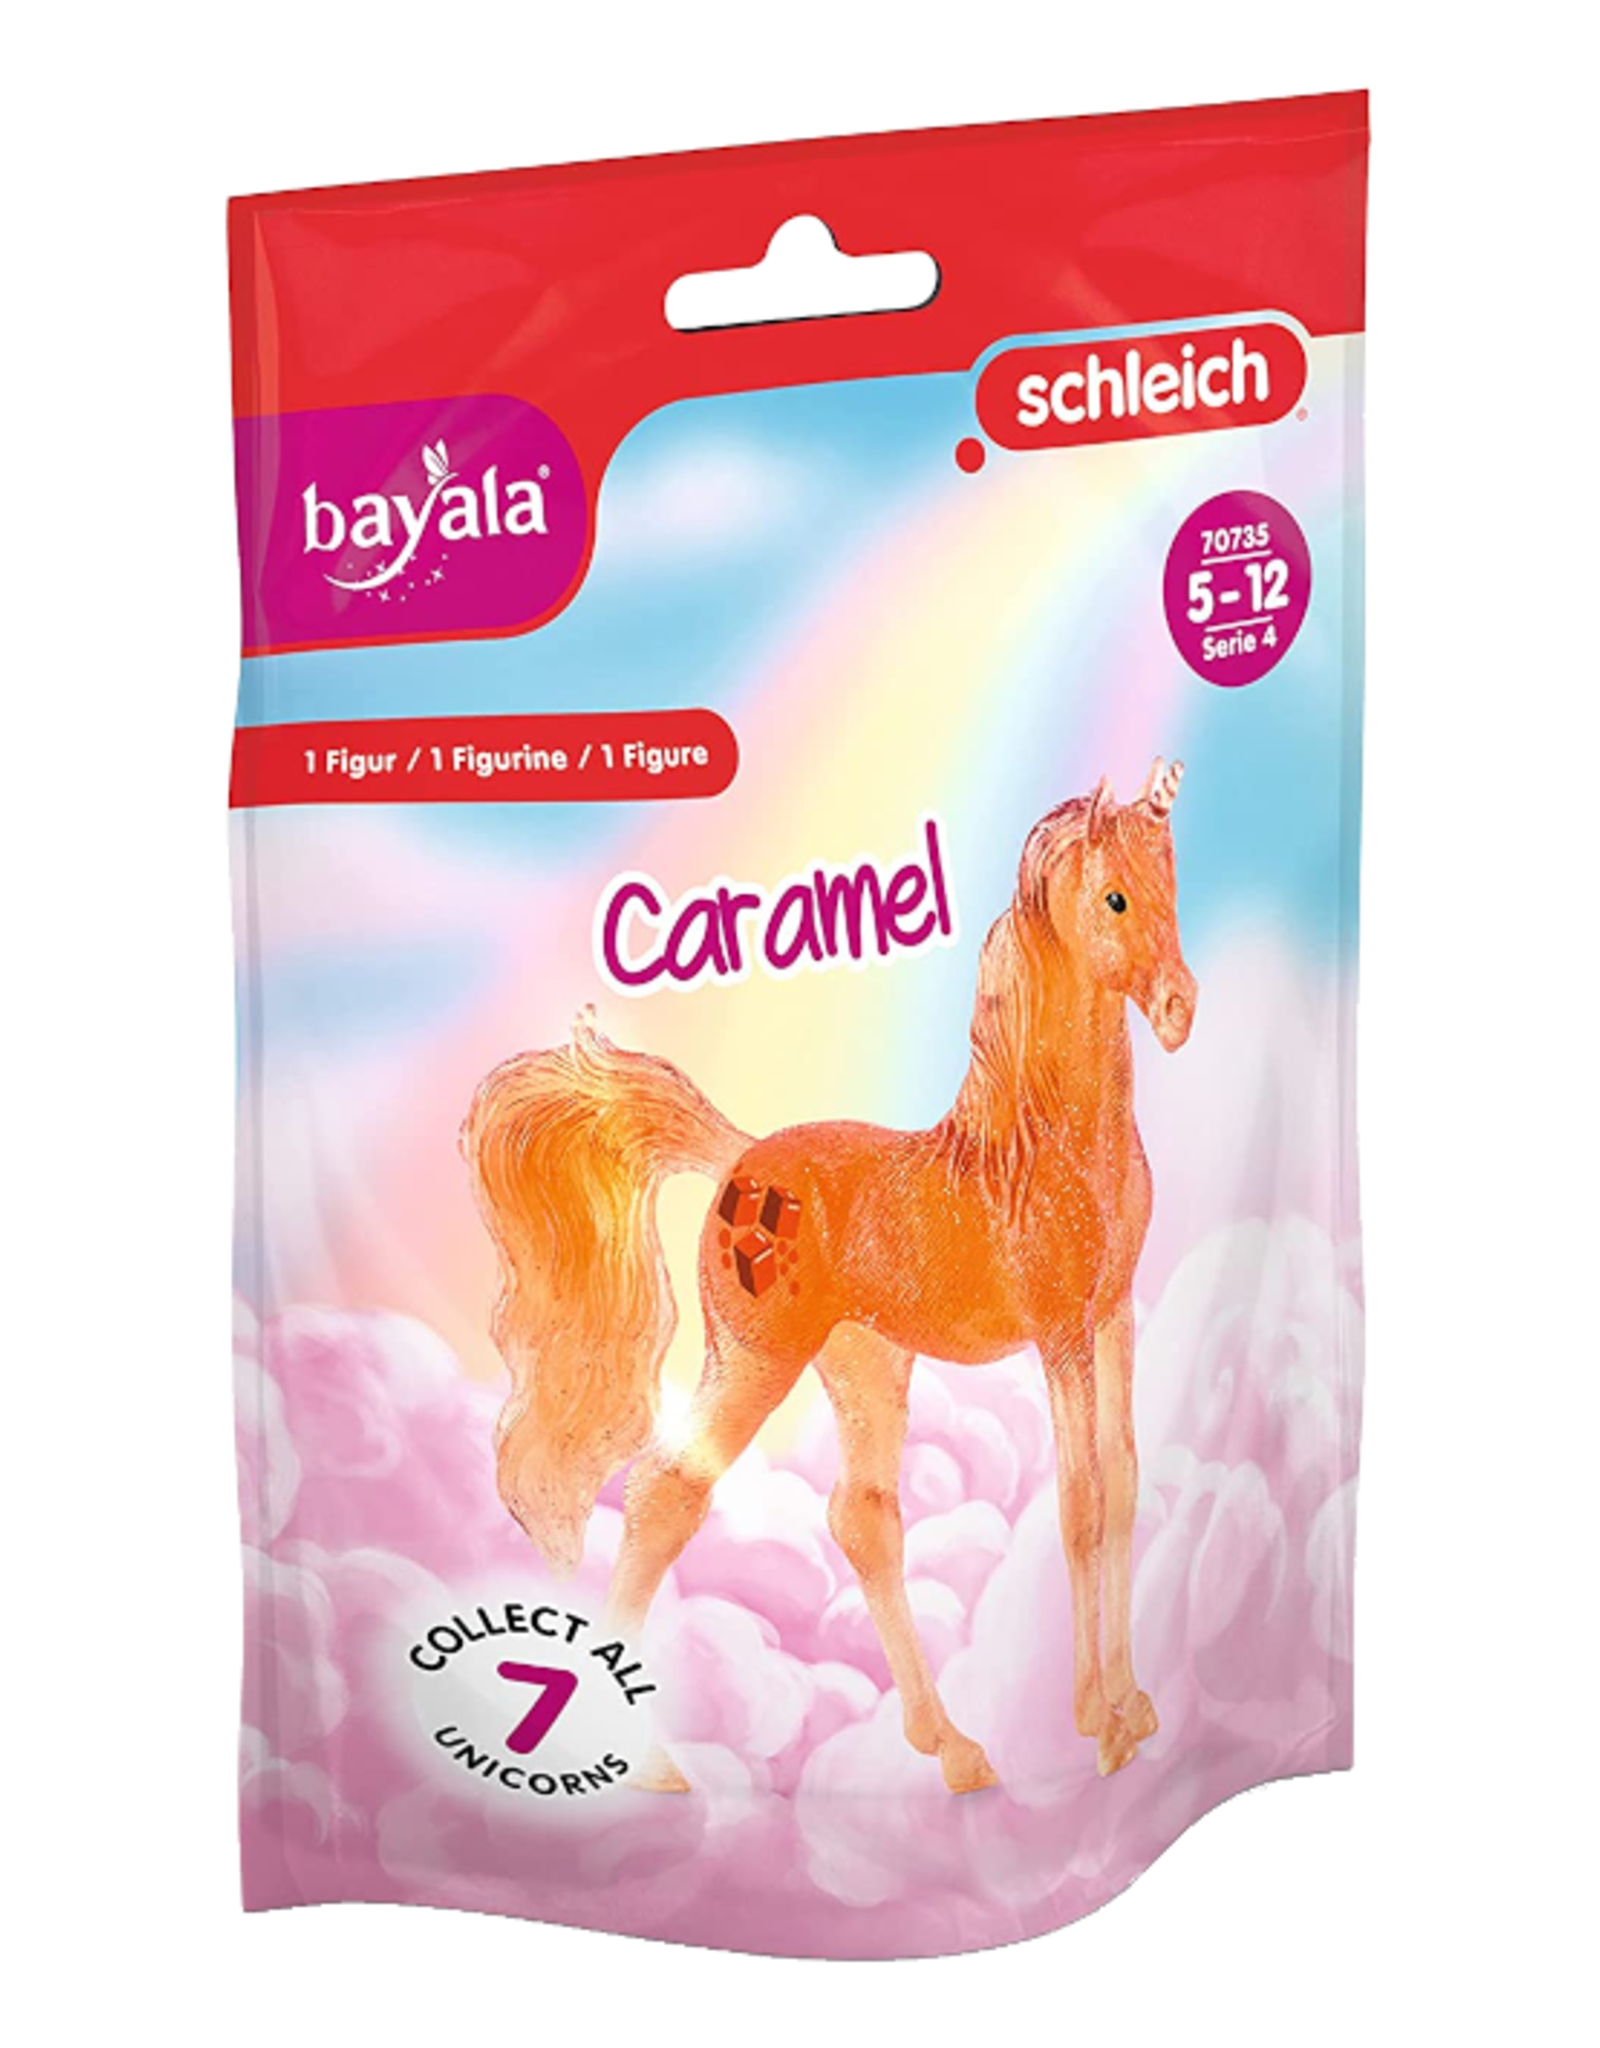 Schleich Schleich - Bayala - 70735 - Caramel Collectible Unicorn